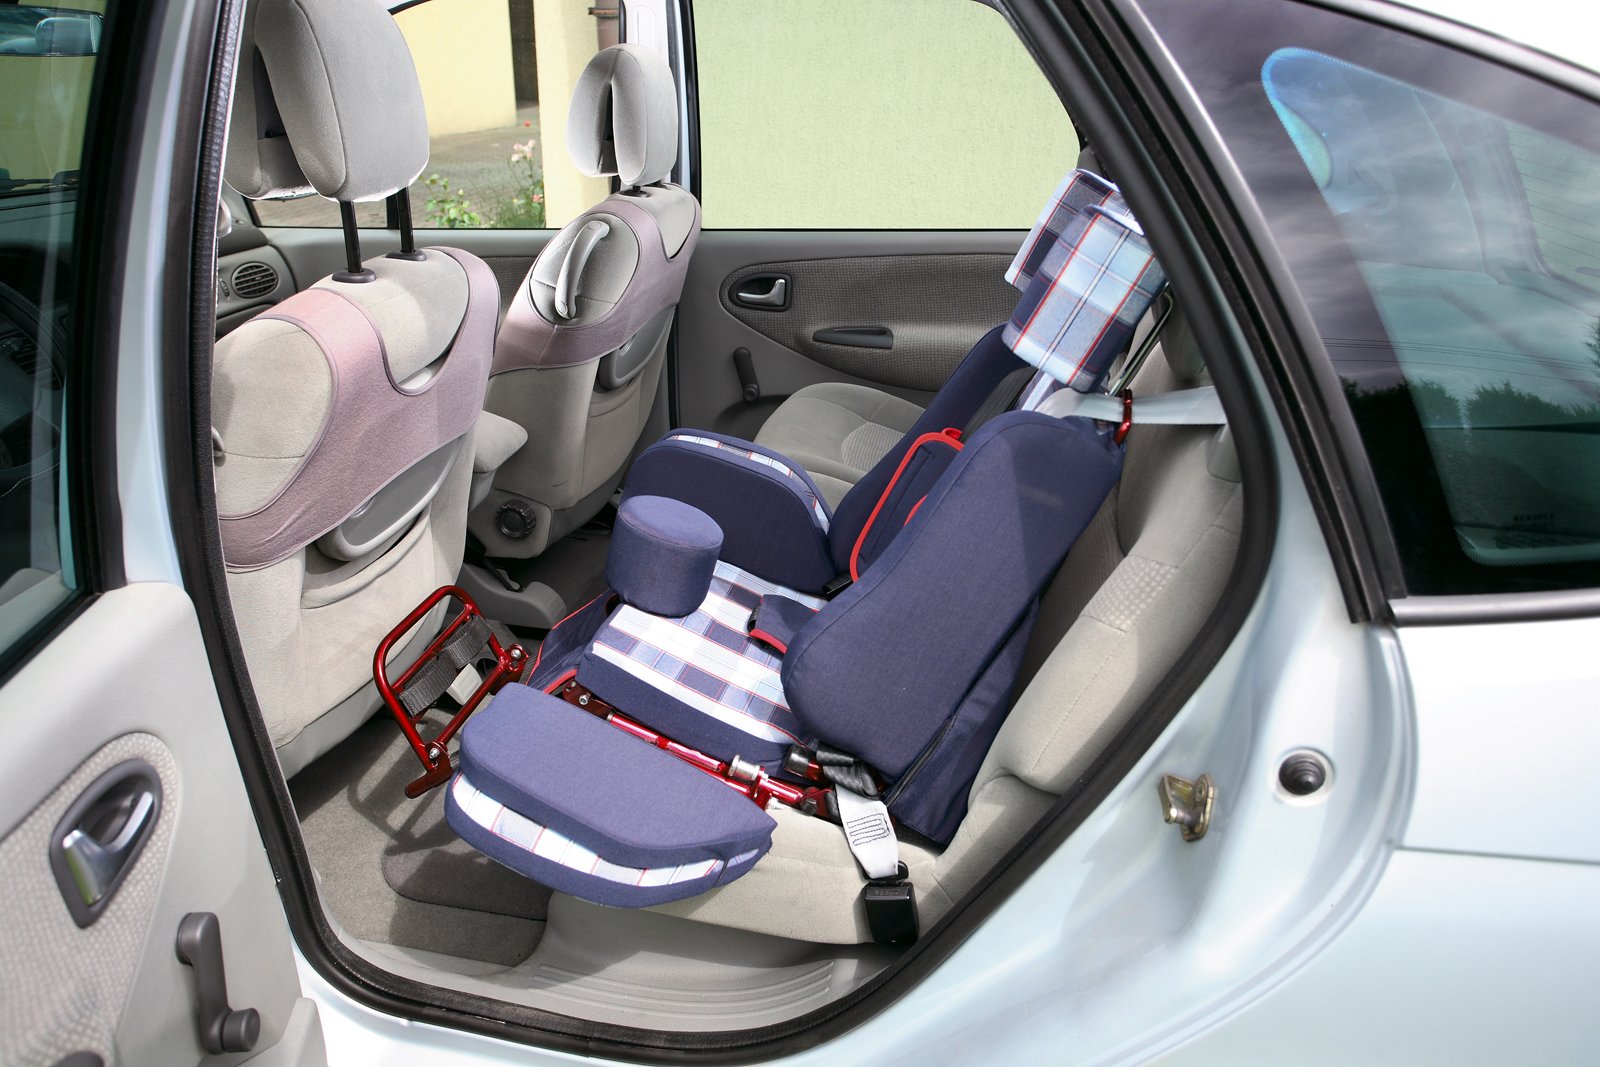 ישיבה עם צרכים מיוחדים: מושבי רכב מתאימים לילדים עם דרישות ייחודיות